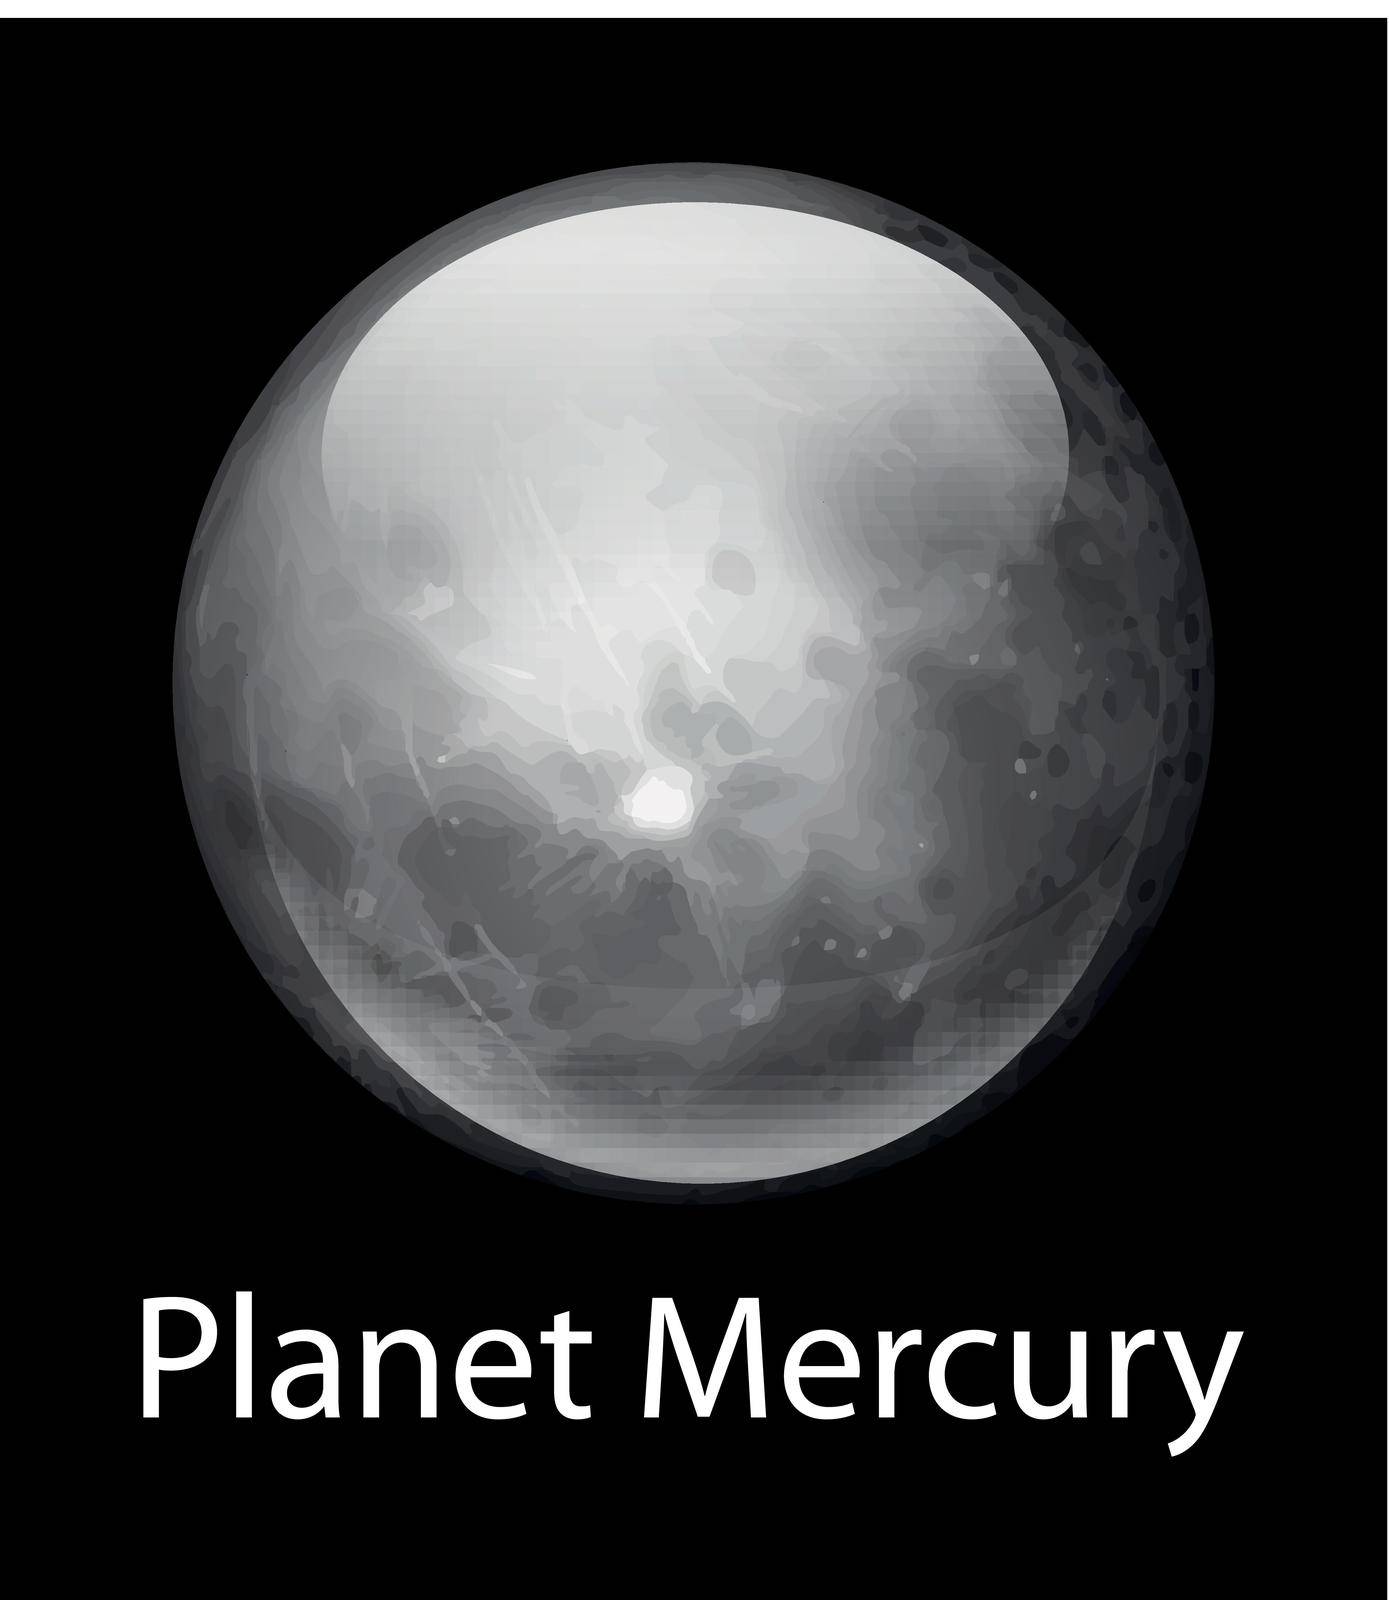 Planet Mercury by iimages